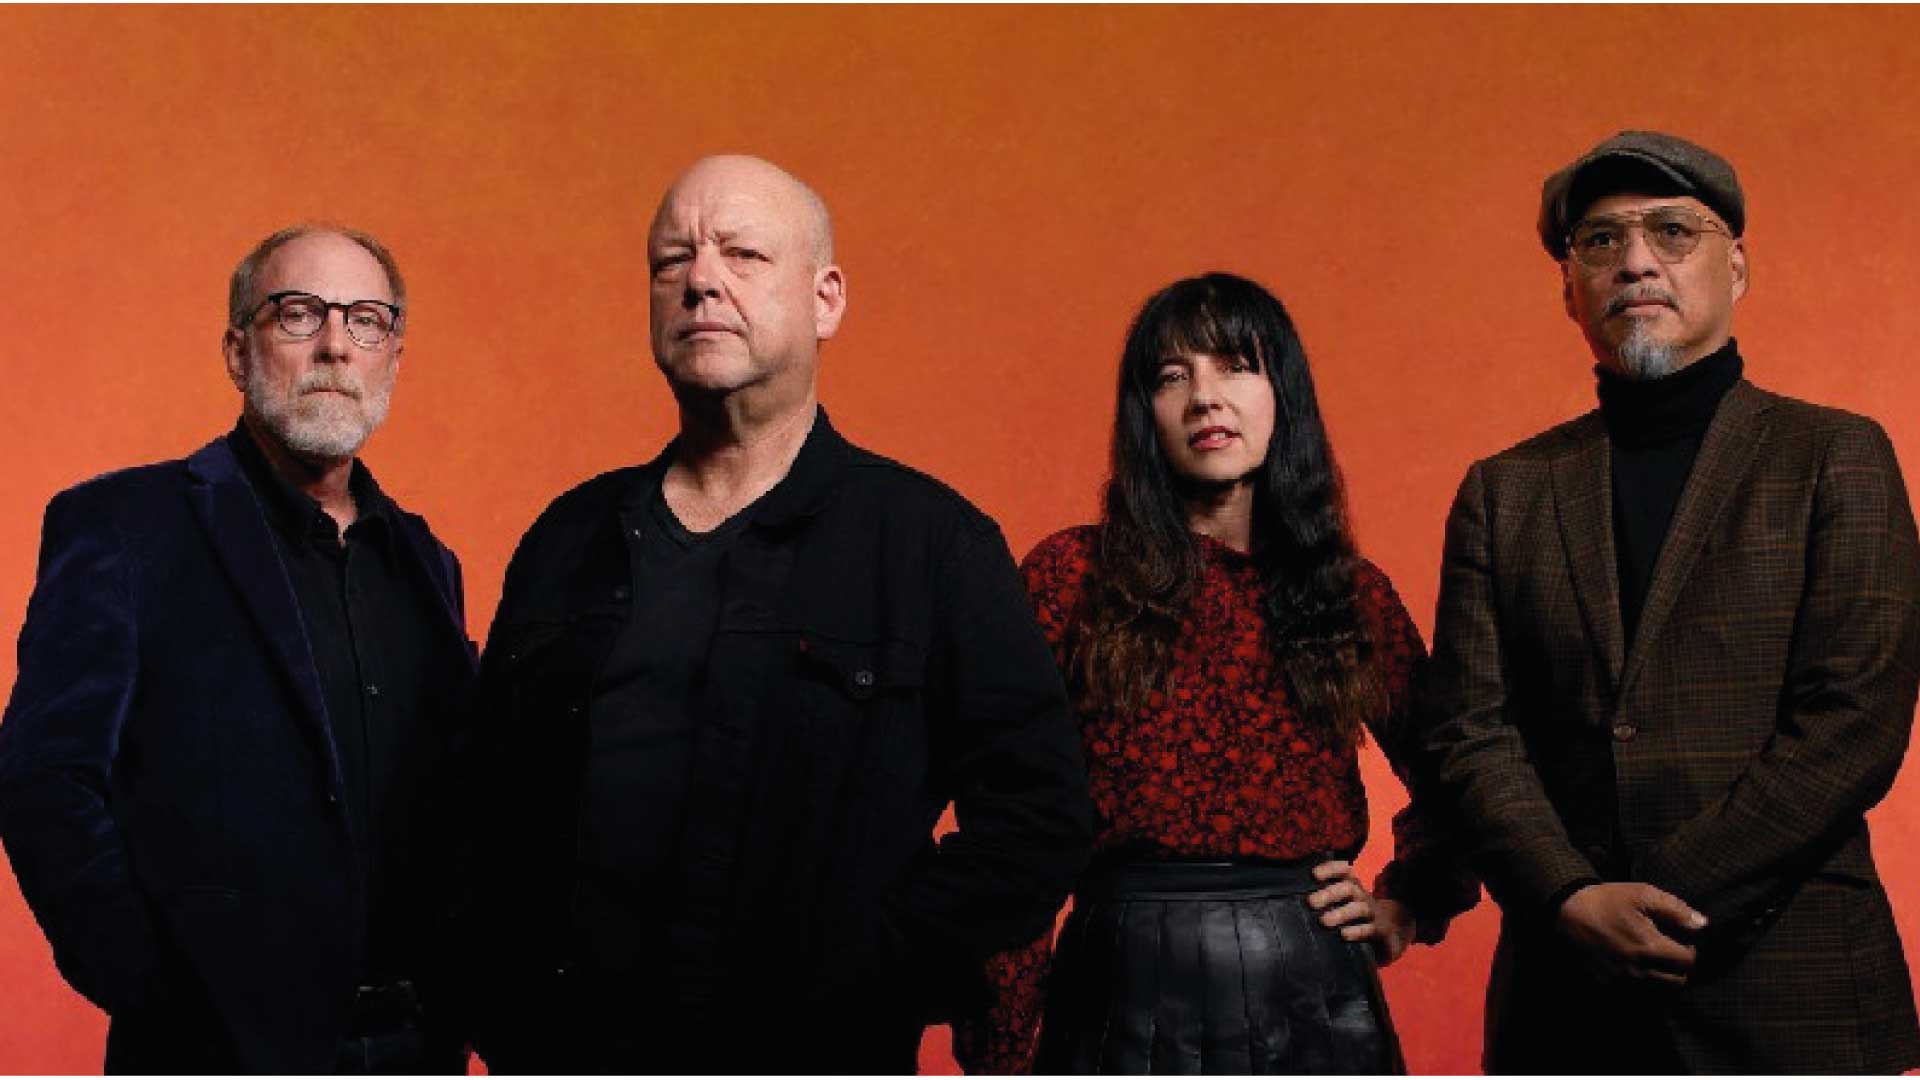 Pixies entrega "Dregs of wine", el tercer track de su próximo disco "Doggerel"